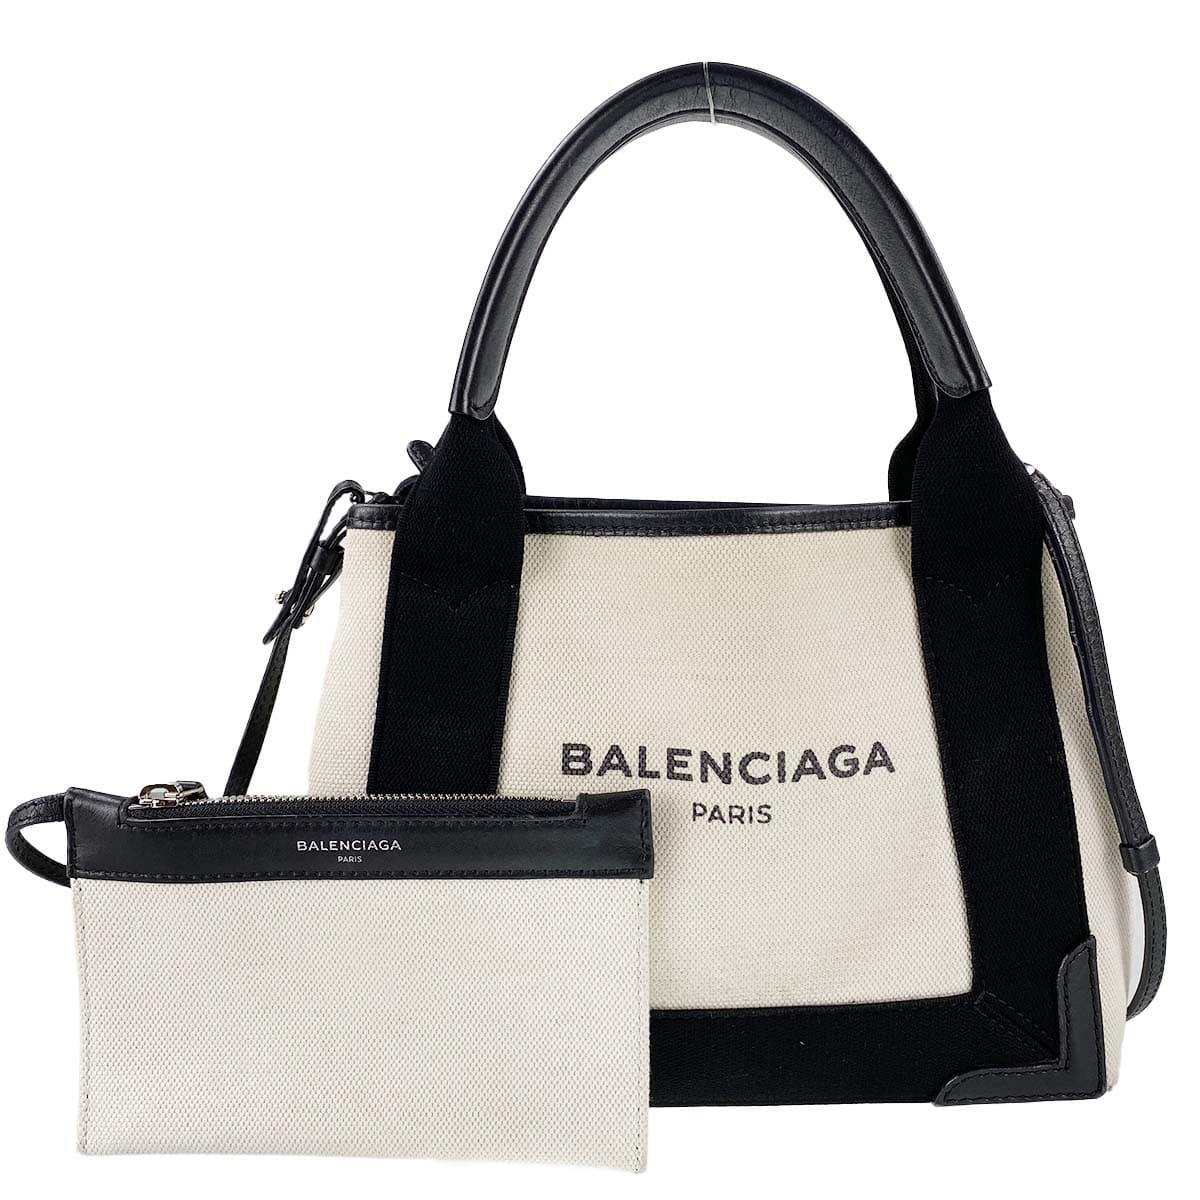 バレンシアガバッグを高く買取 - 最新相場でBalenciagaを売るならブラ 